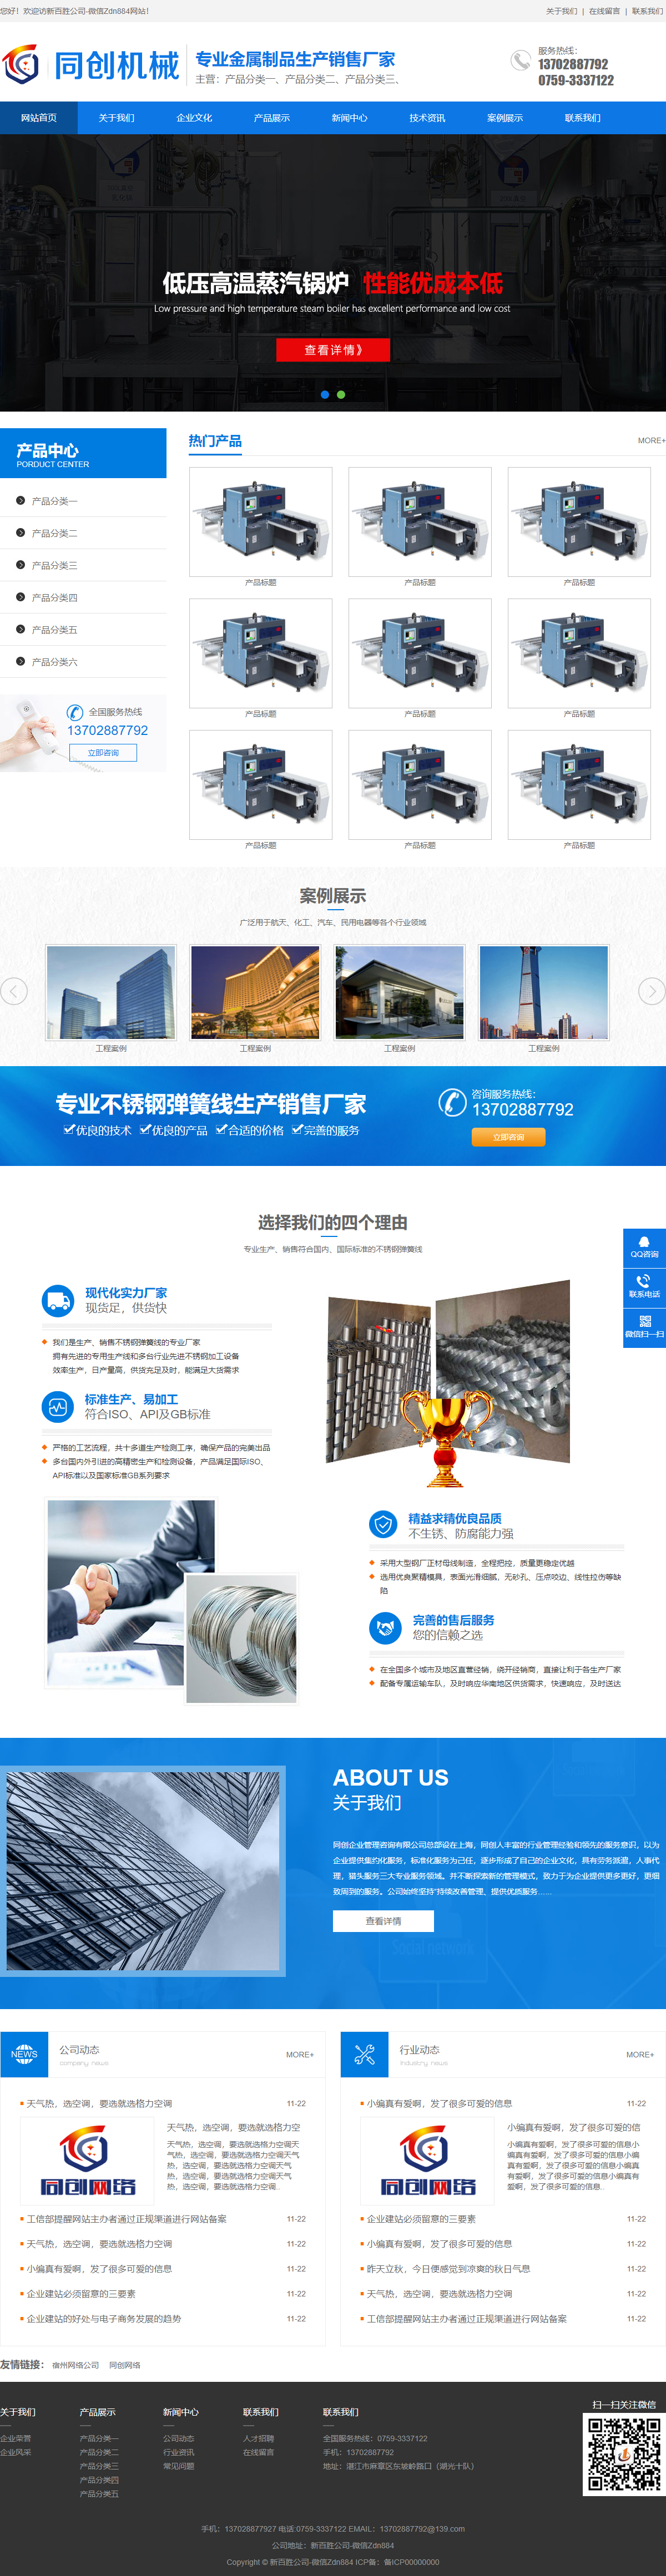 湛江市邦坚建材有限公司网站案例